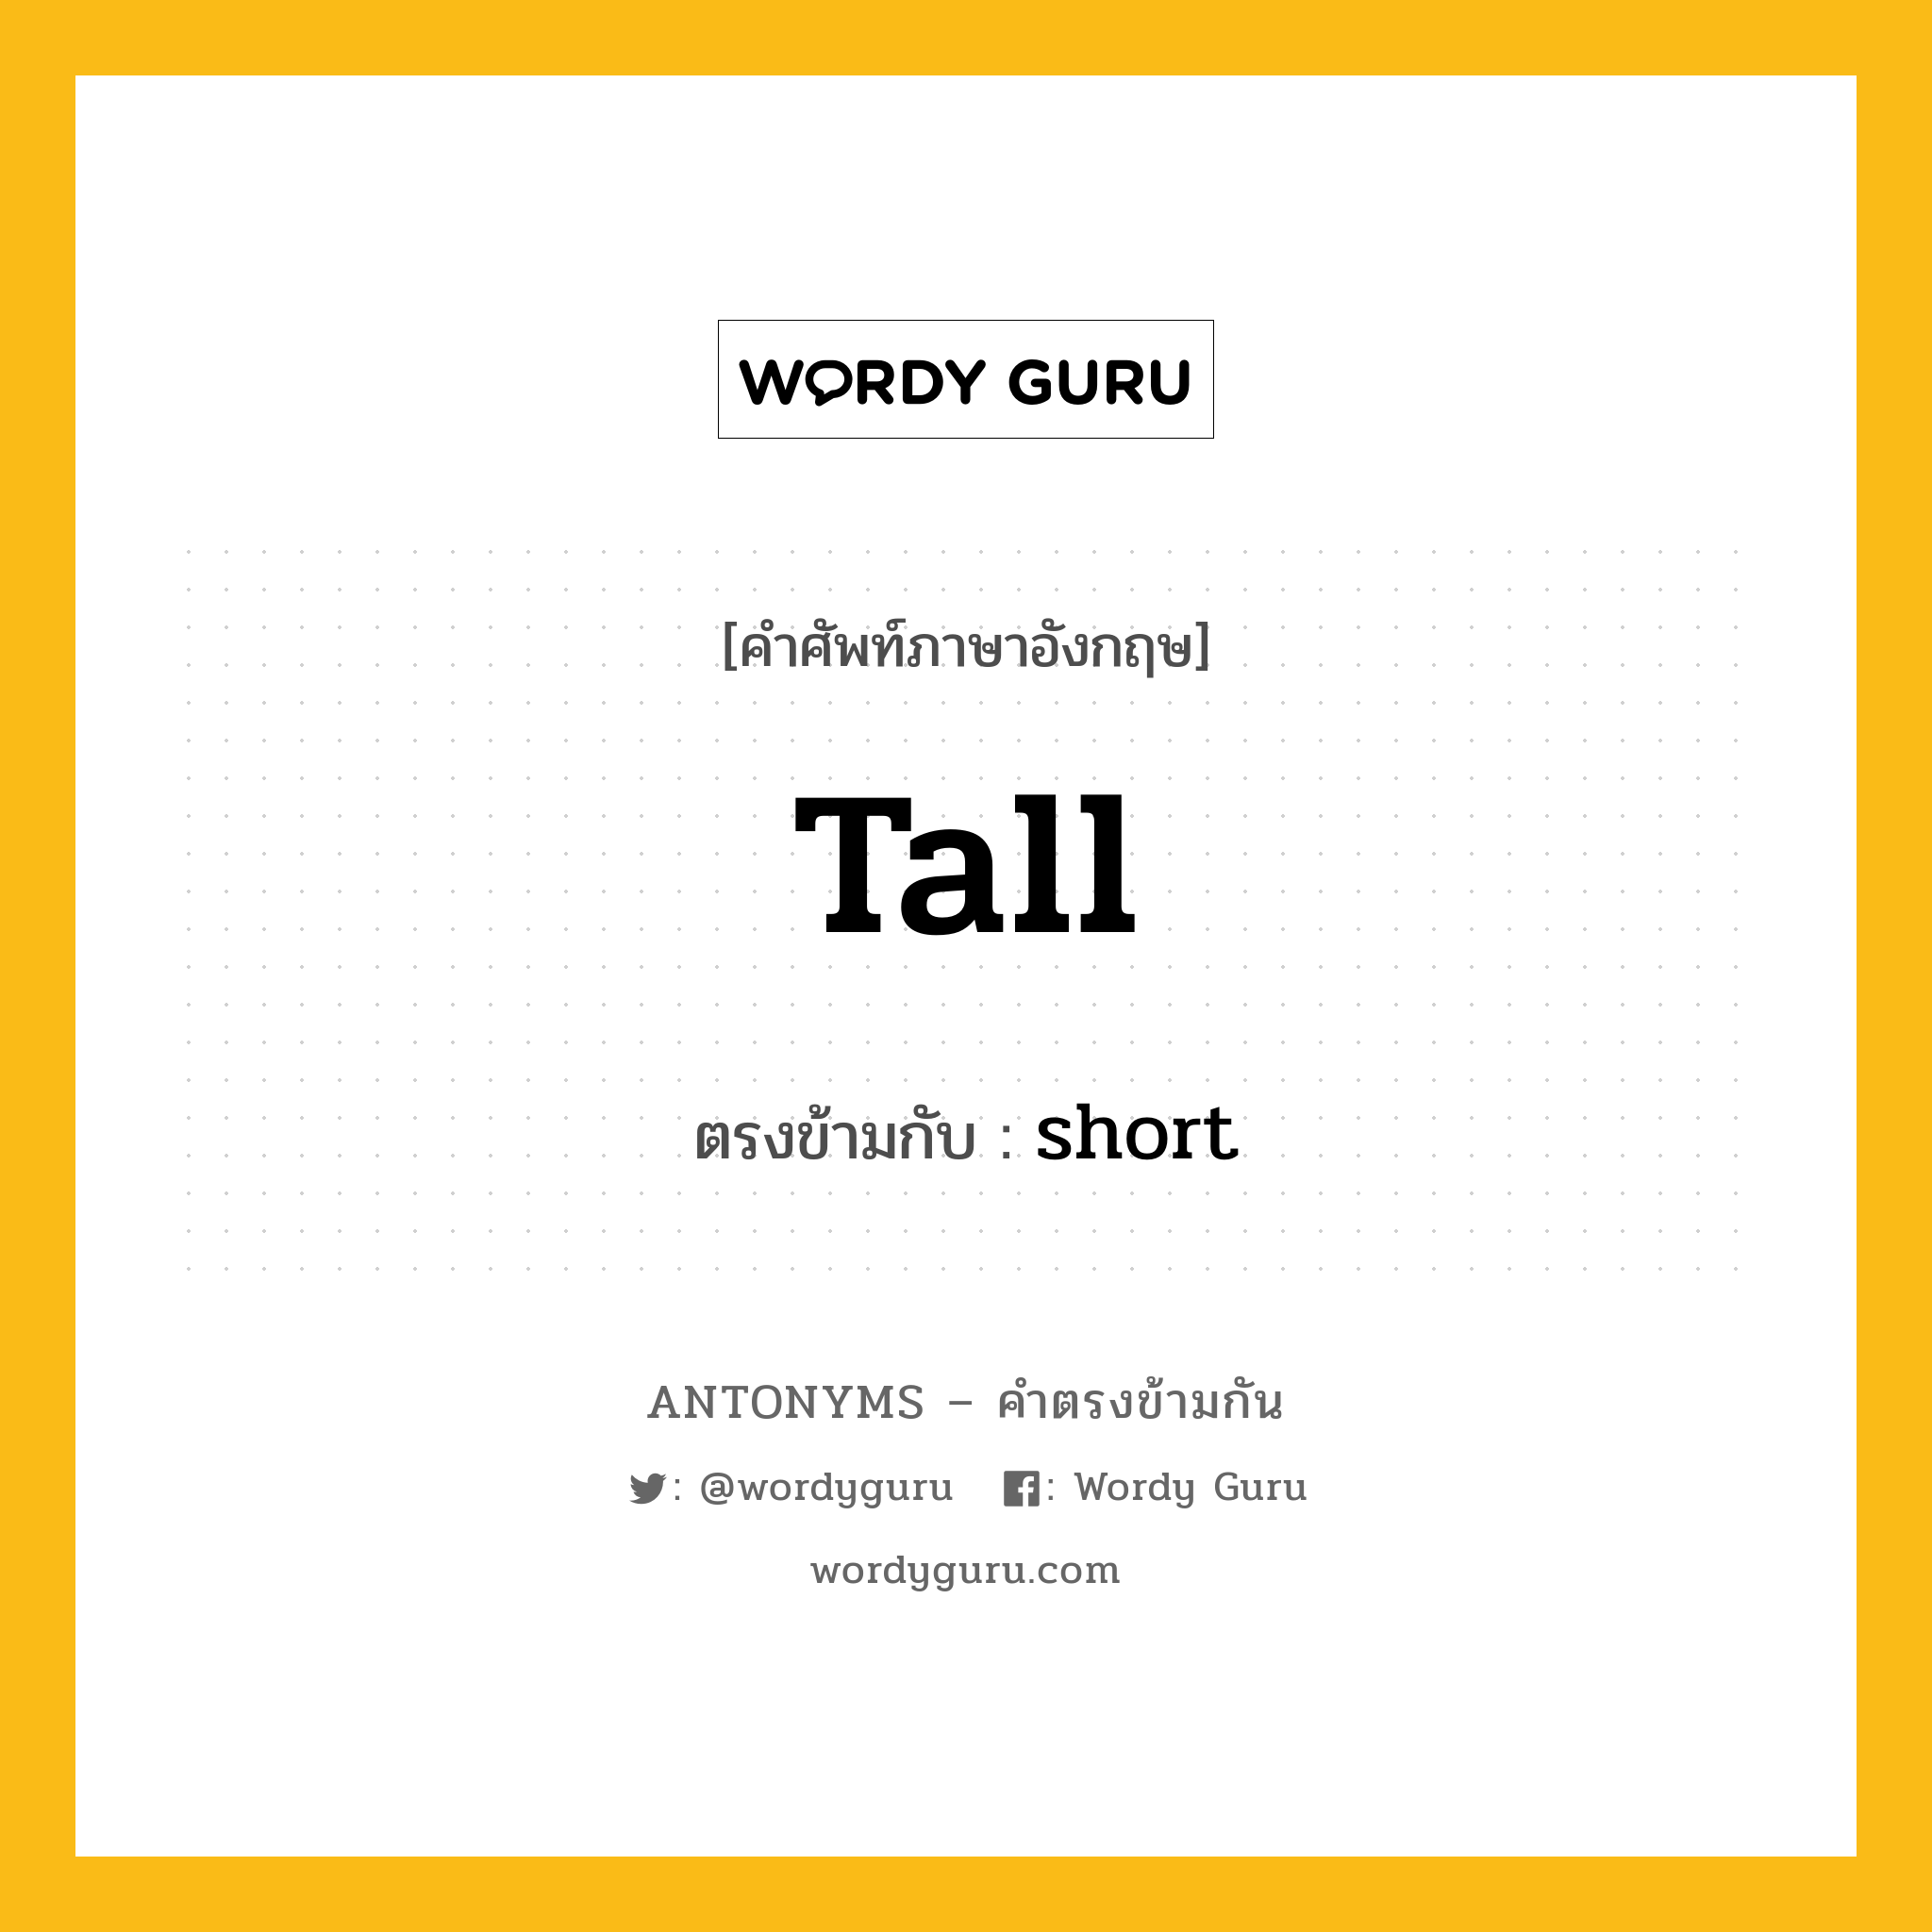 tall เป็นคำตรงข้ามกับคำไหนบ้าง?, คำศัพท์ภาษาอังกฤษ tall ตรงข้ามกับ short หมวด short